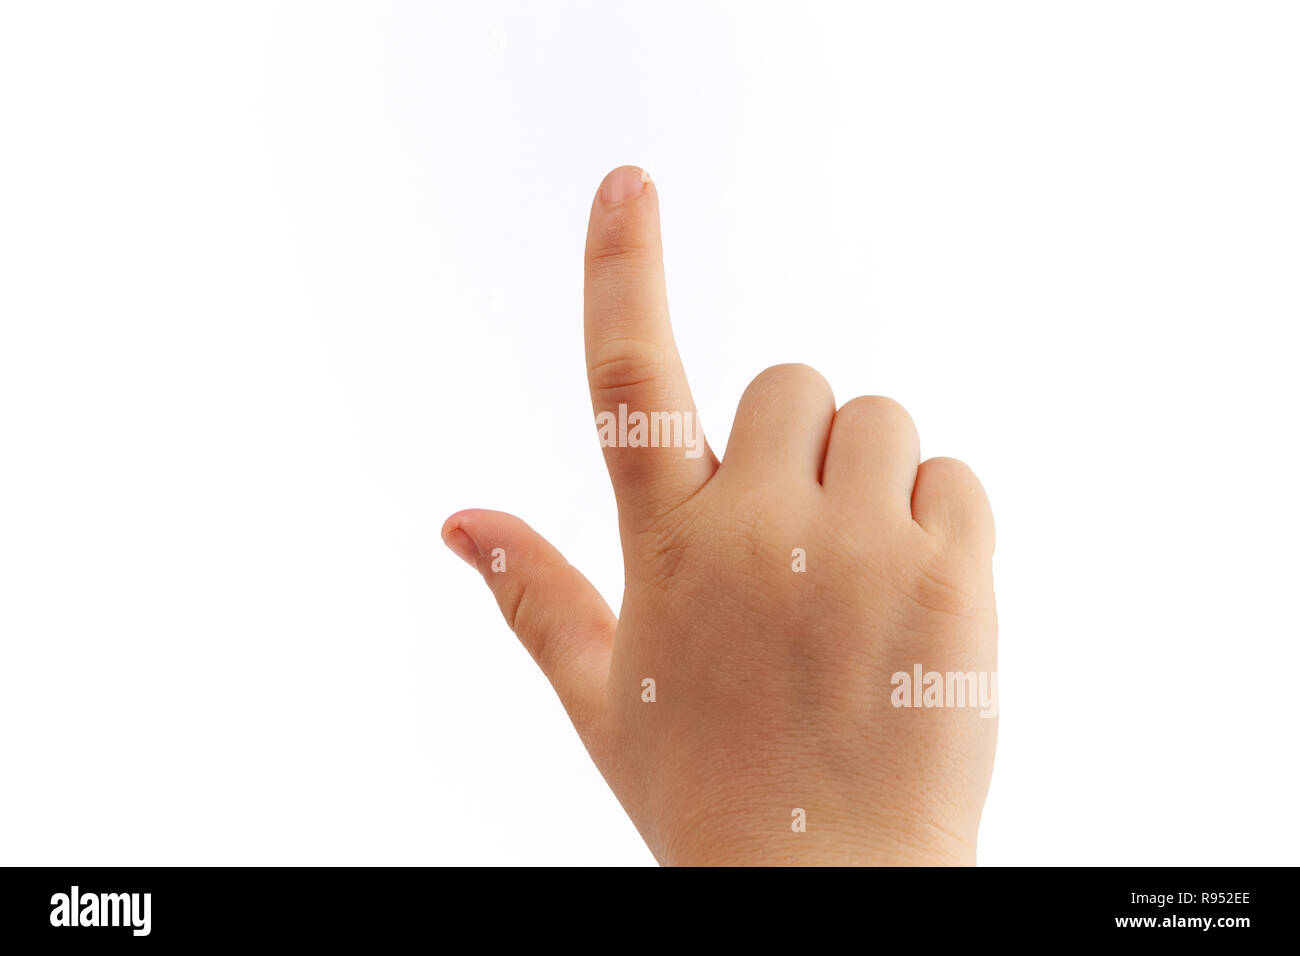 Derecho del niño golpeando suavemente con el dedo índice aislado sobre fondo blanco. Foto de stock